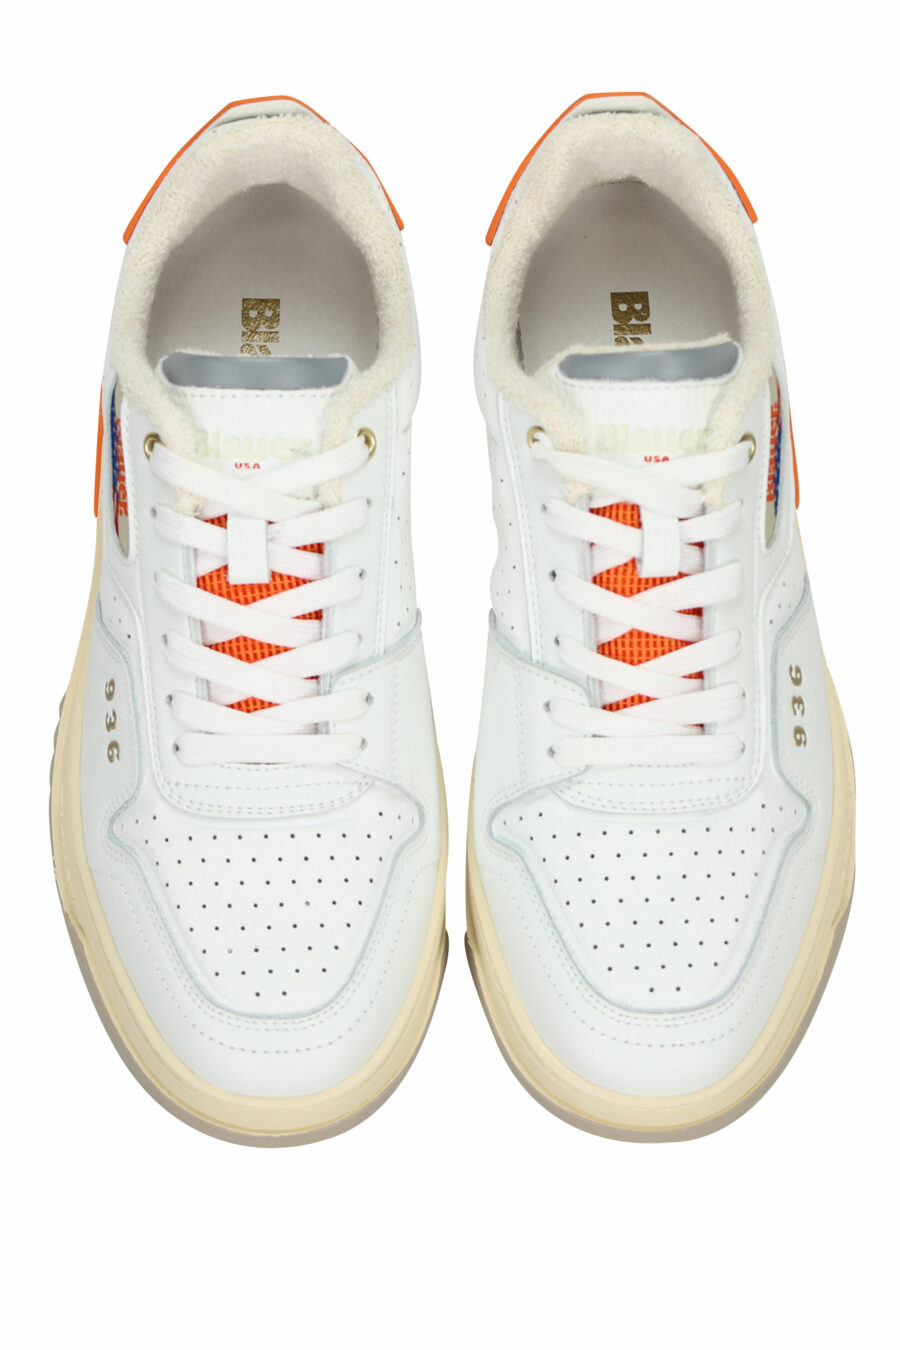 Zapatillas blancas con naranja "harper" y minilogo - 8058156544314 4